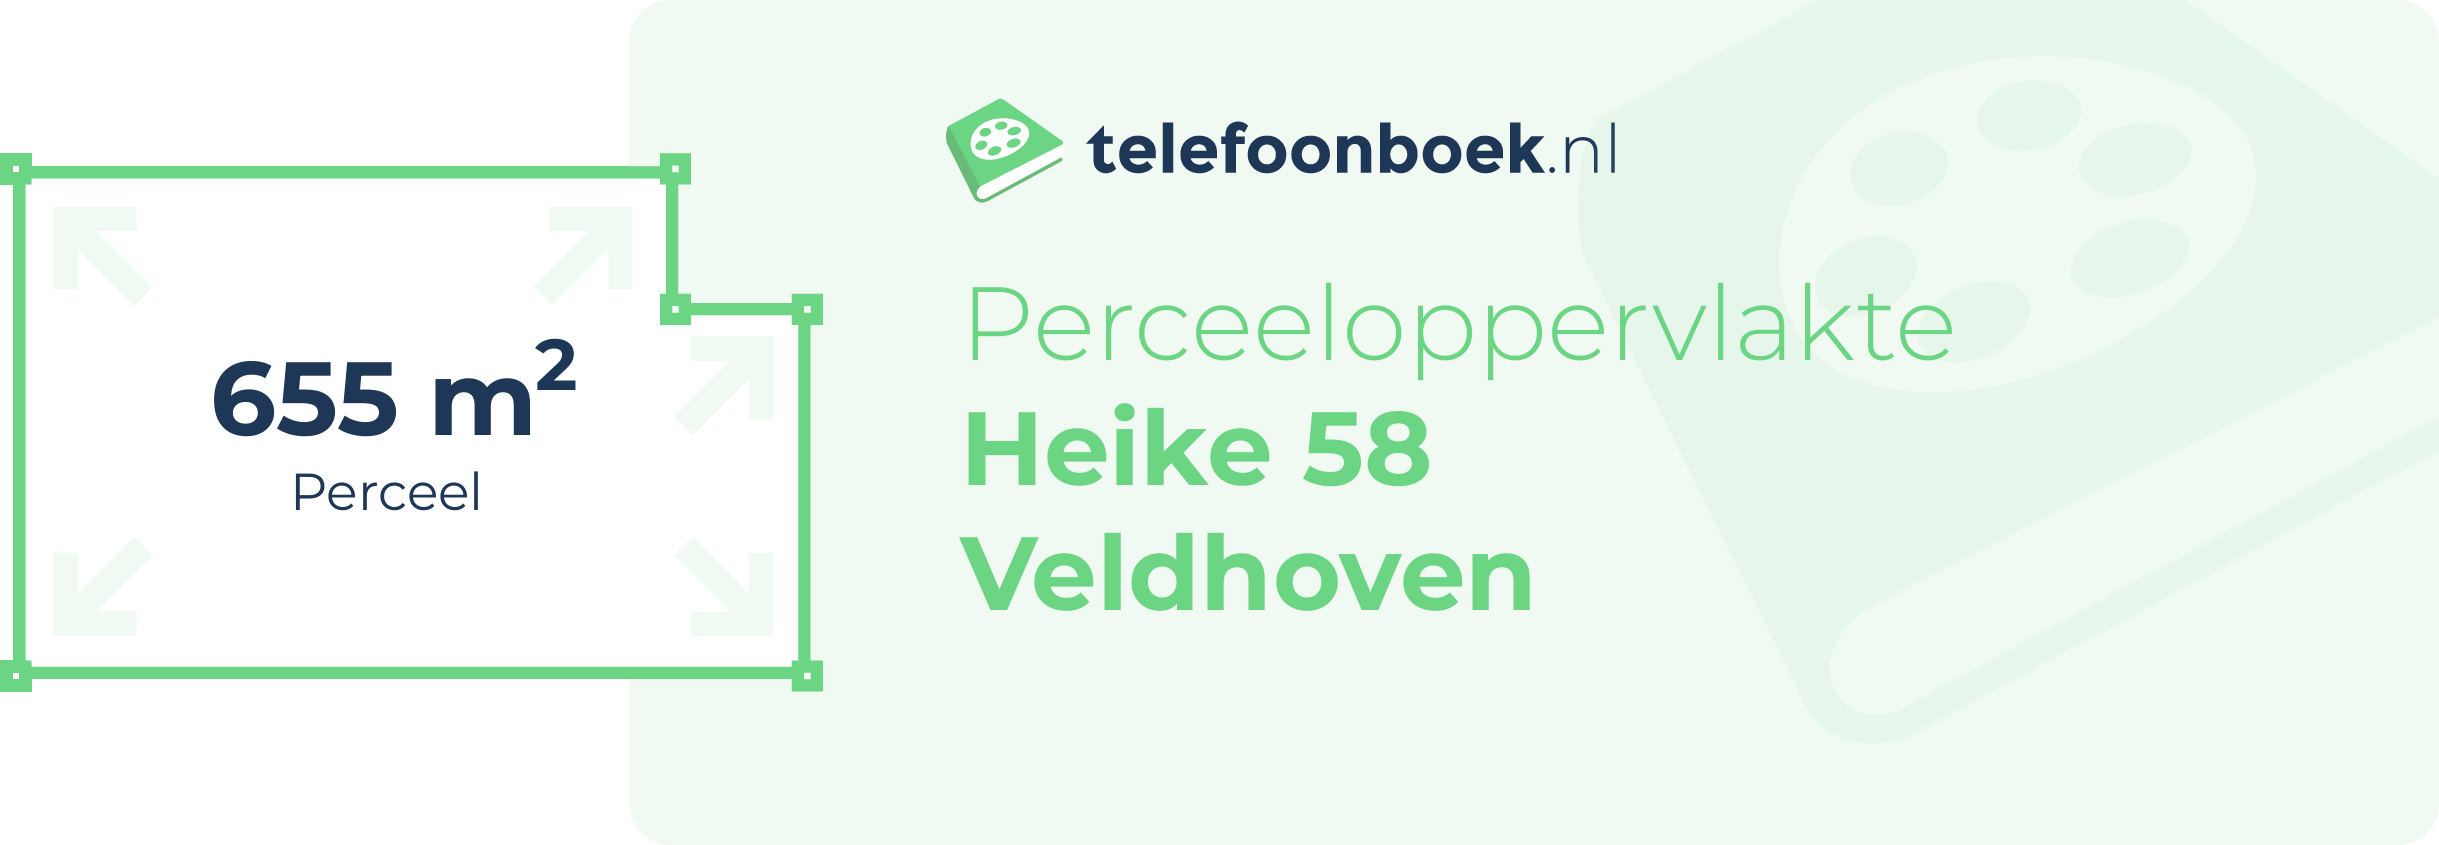 Perceeloppervlakte Heike 58 Veldhoven